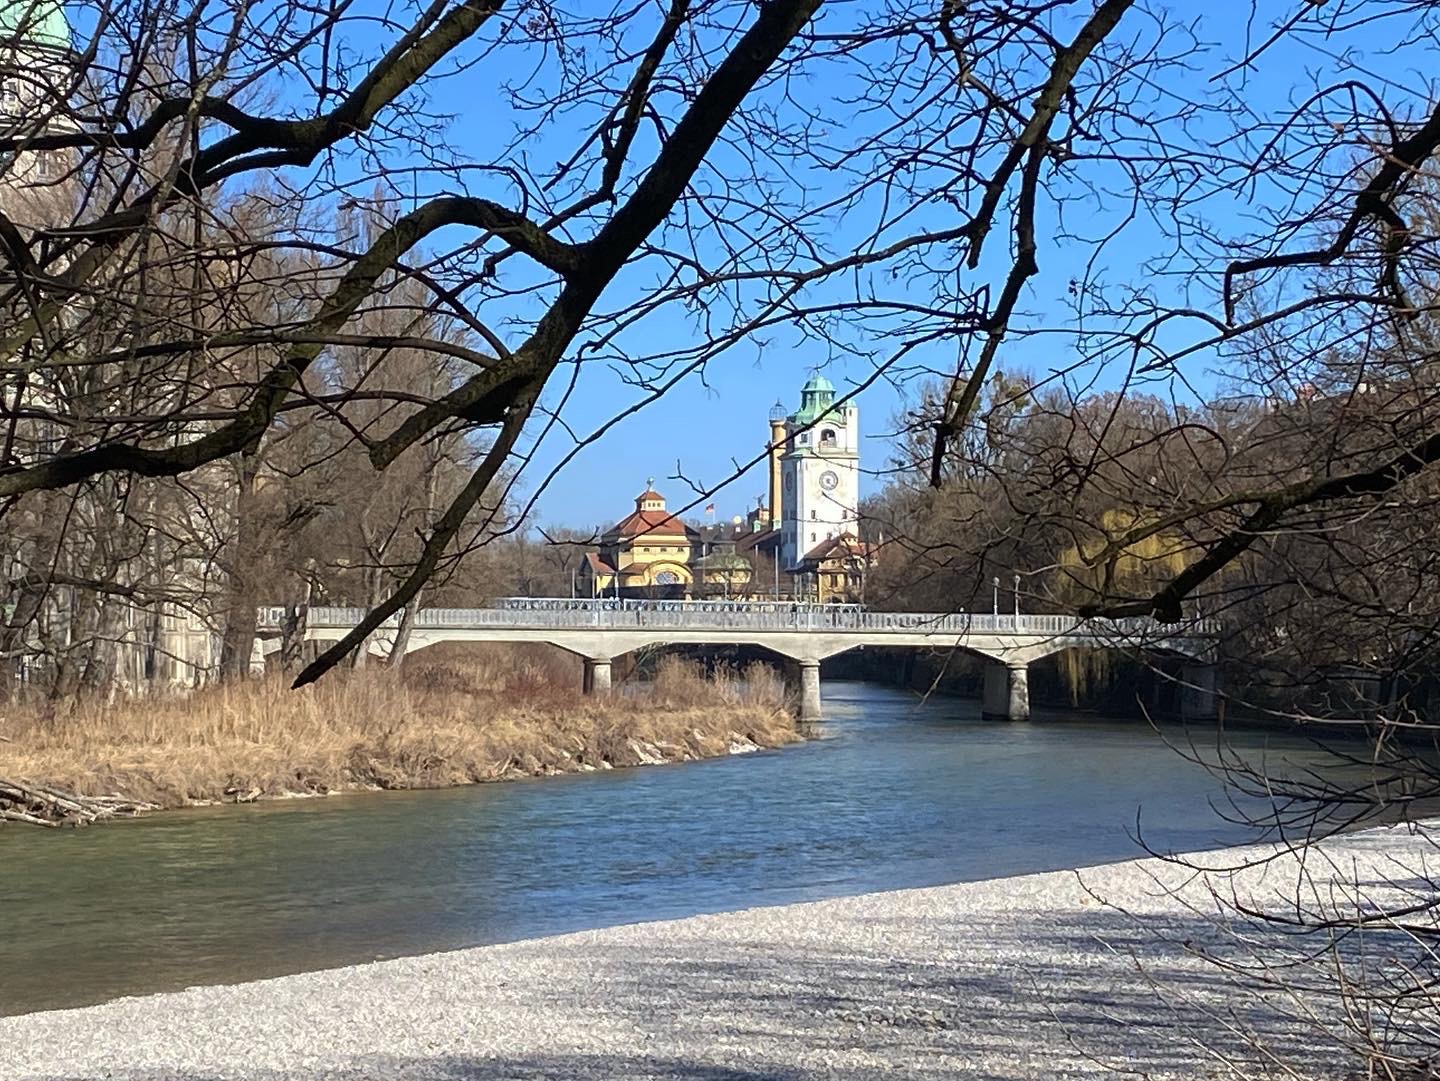 Along the Isar